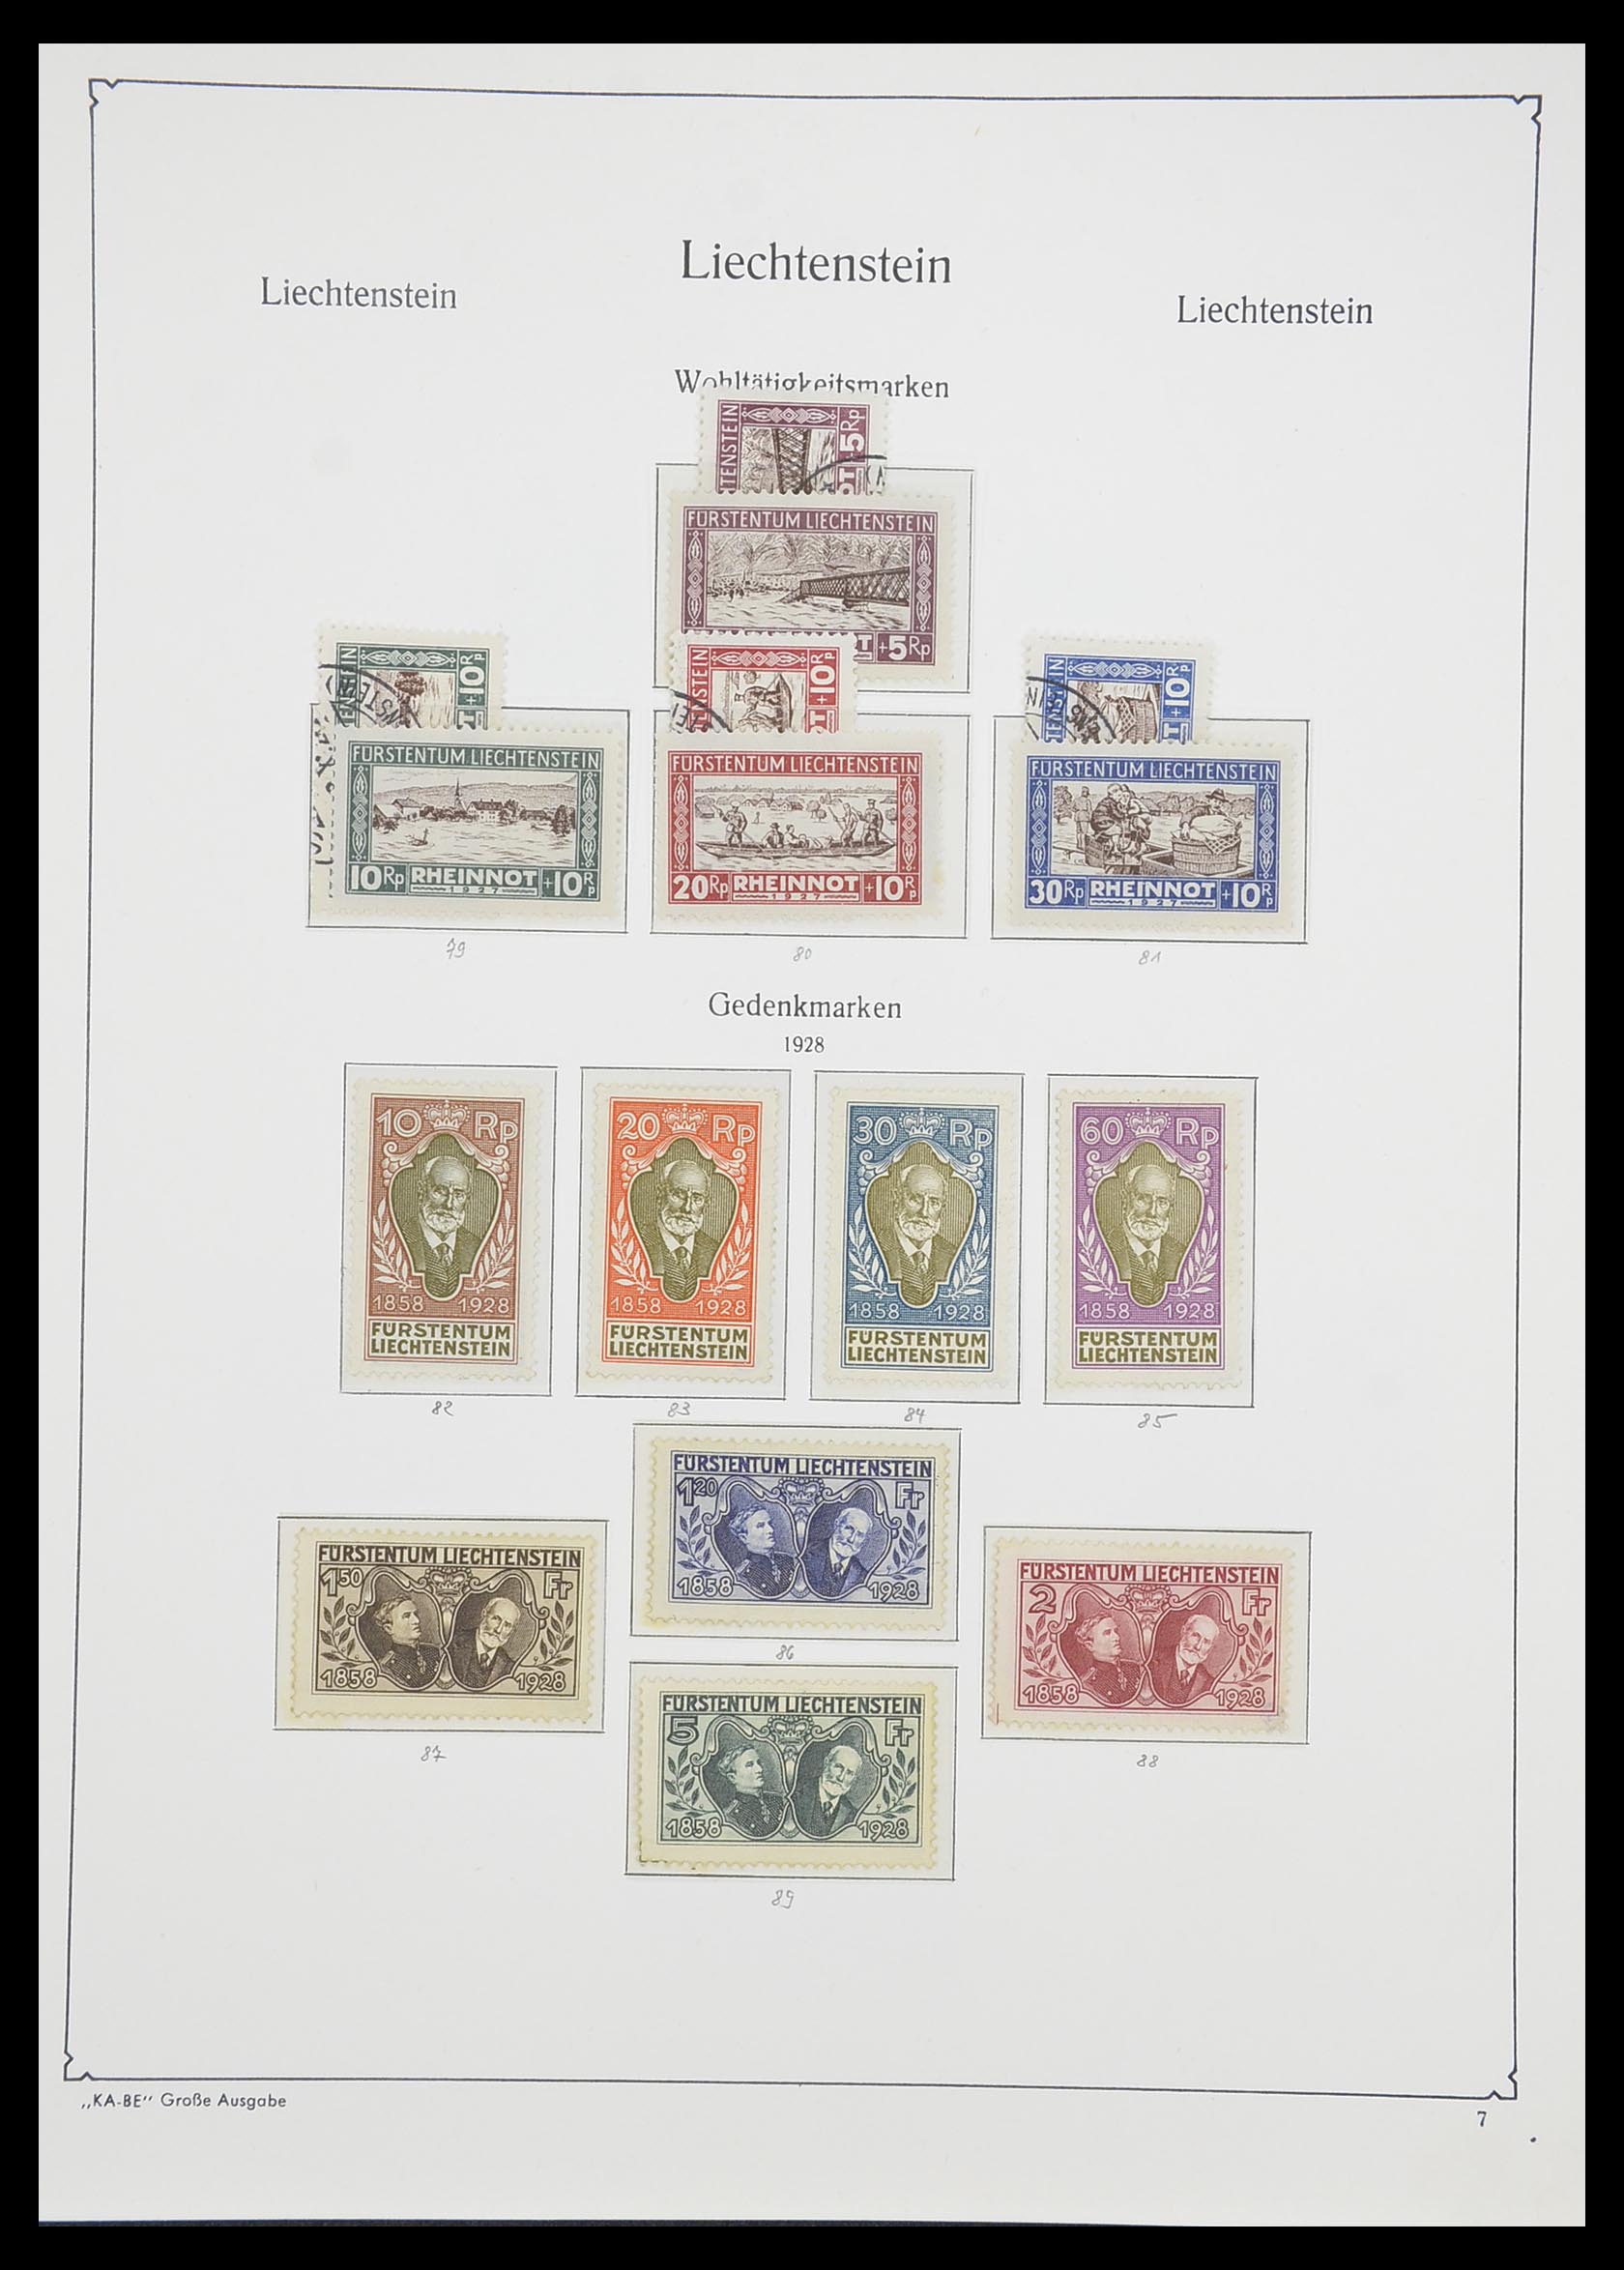 33493 010 - Stamp collection 33493 Liechtenstein 1912-2008.